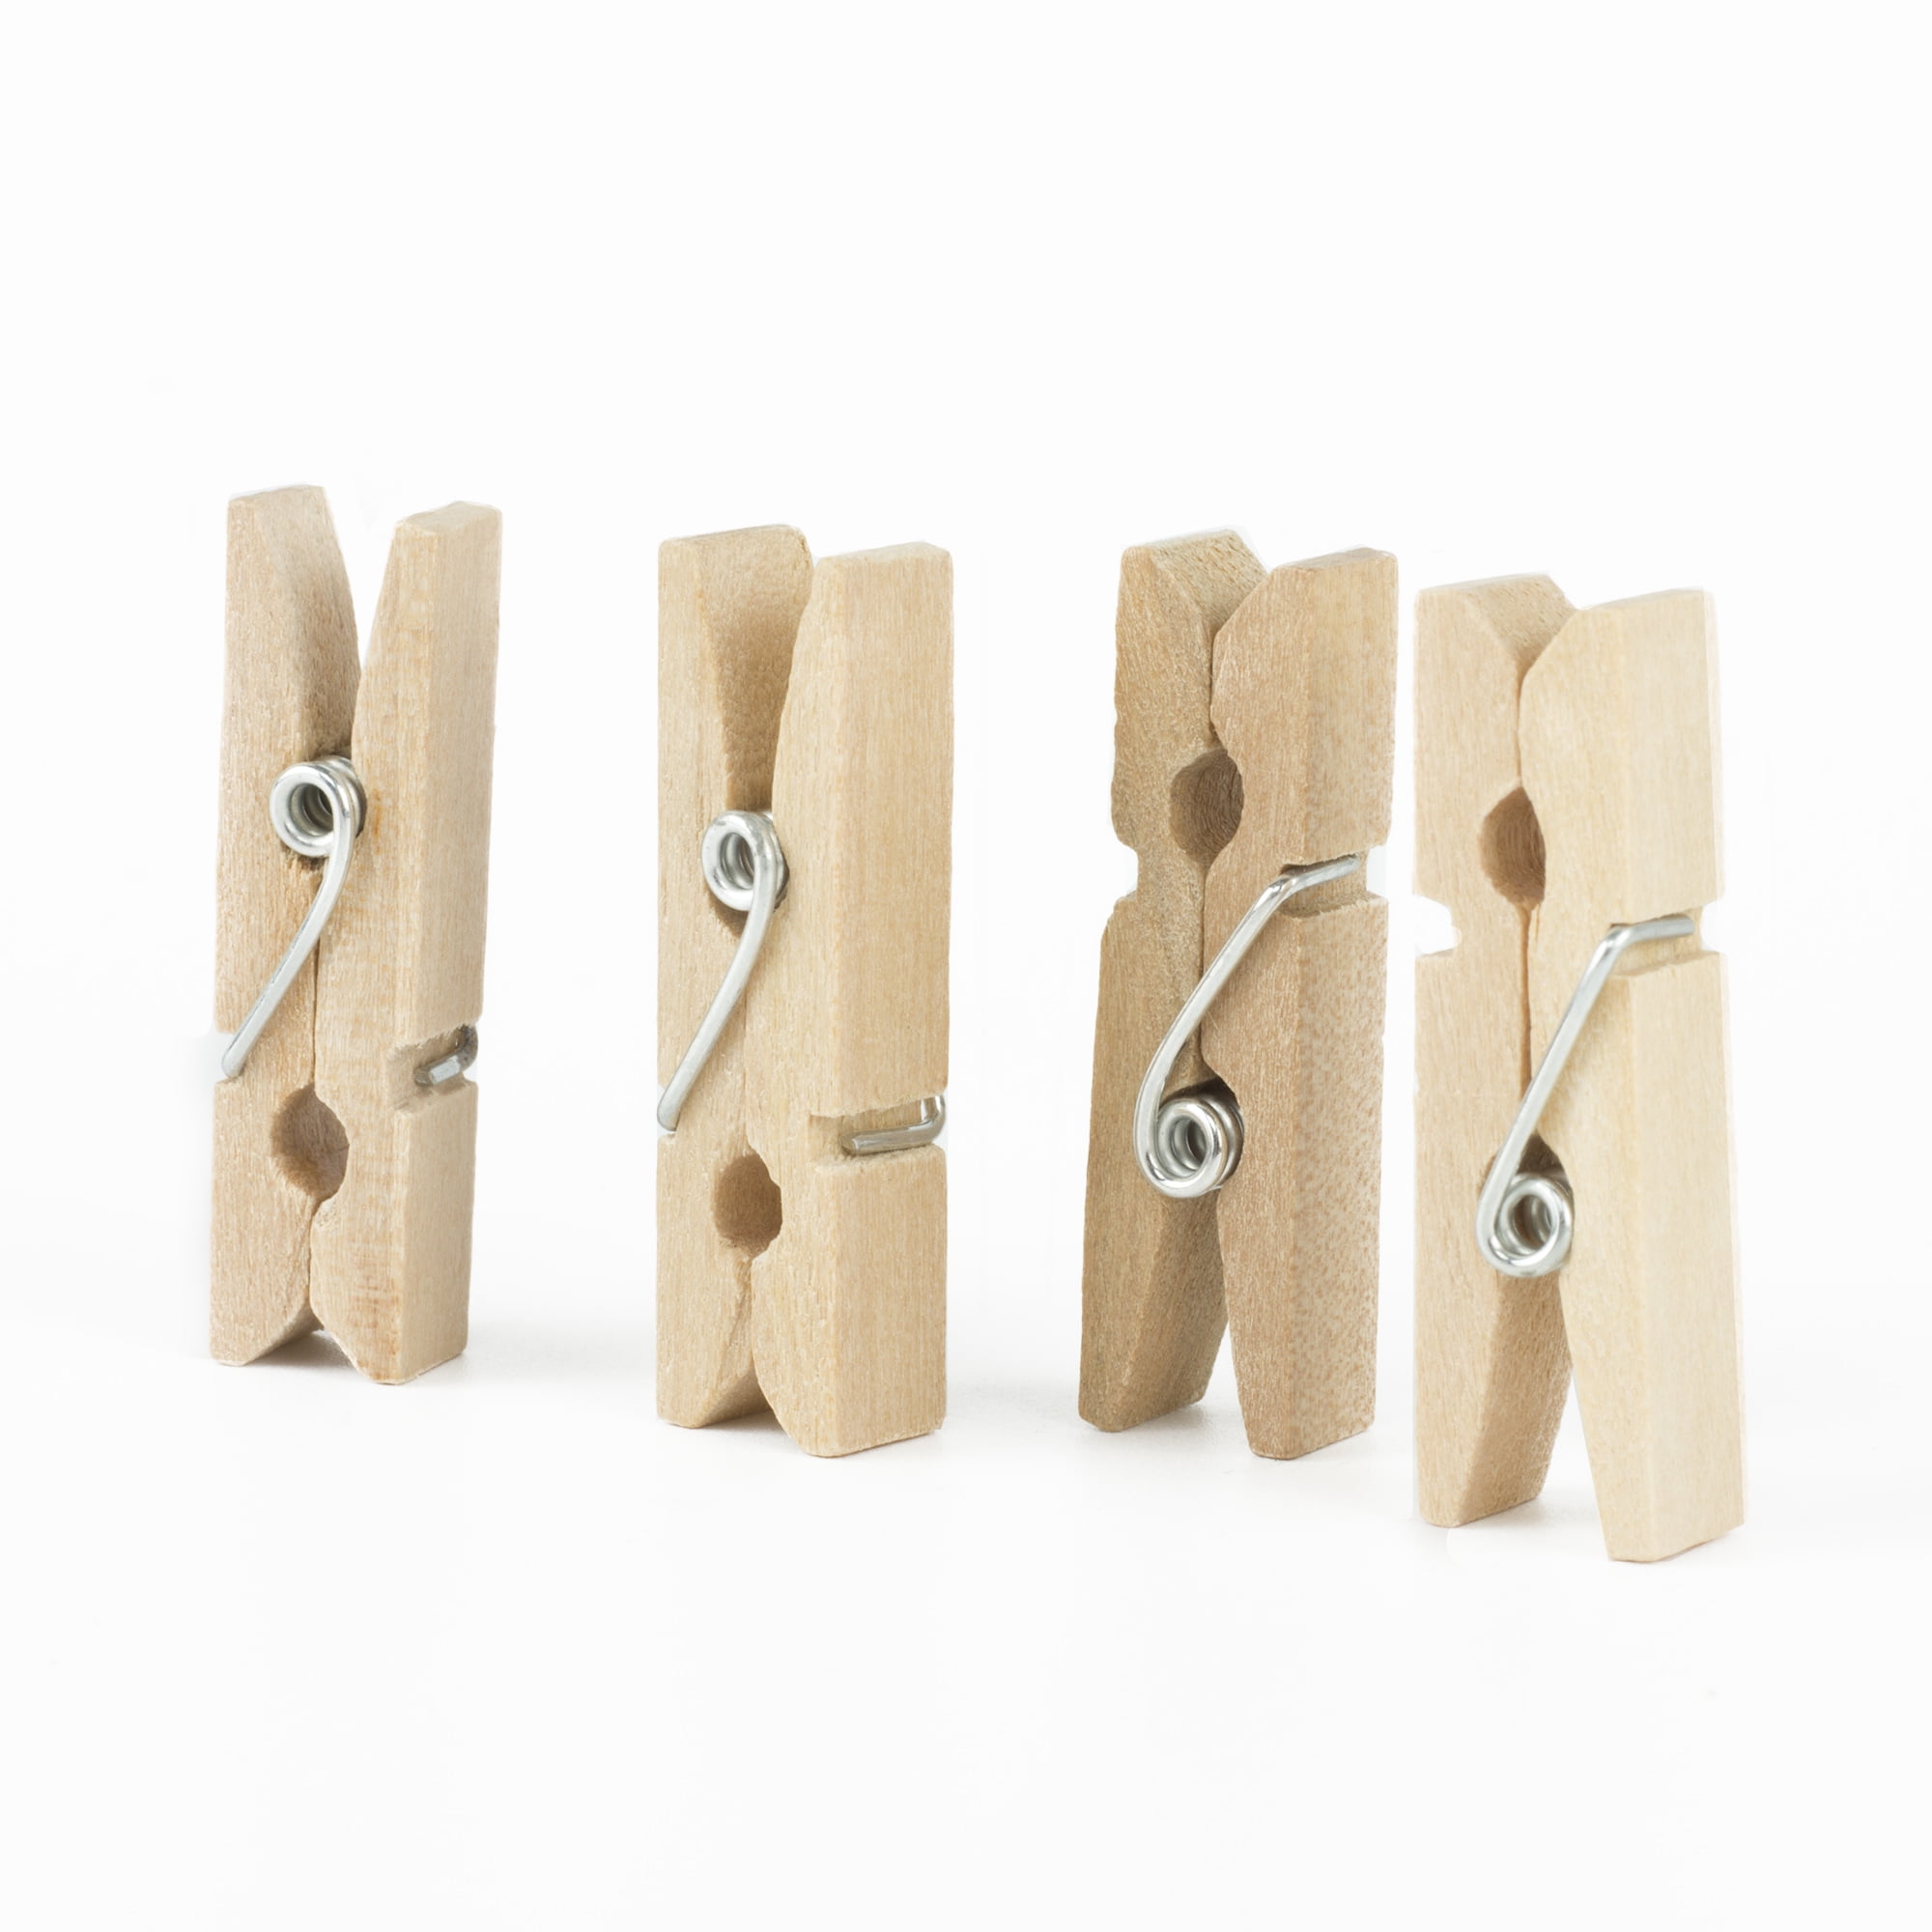  Goldenvalualbe Mini Wooden Craft Clothespins 1 3/4 (Original,  96) : Home & Kitchen